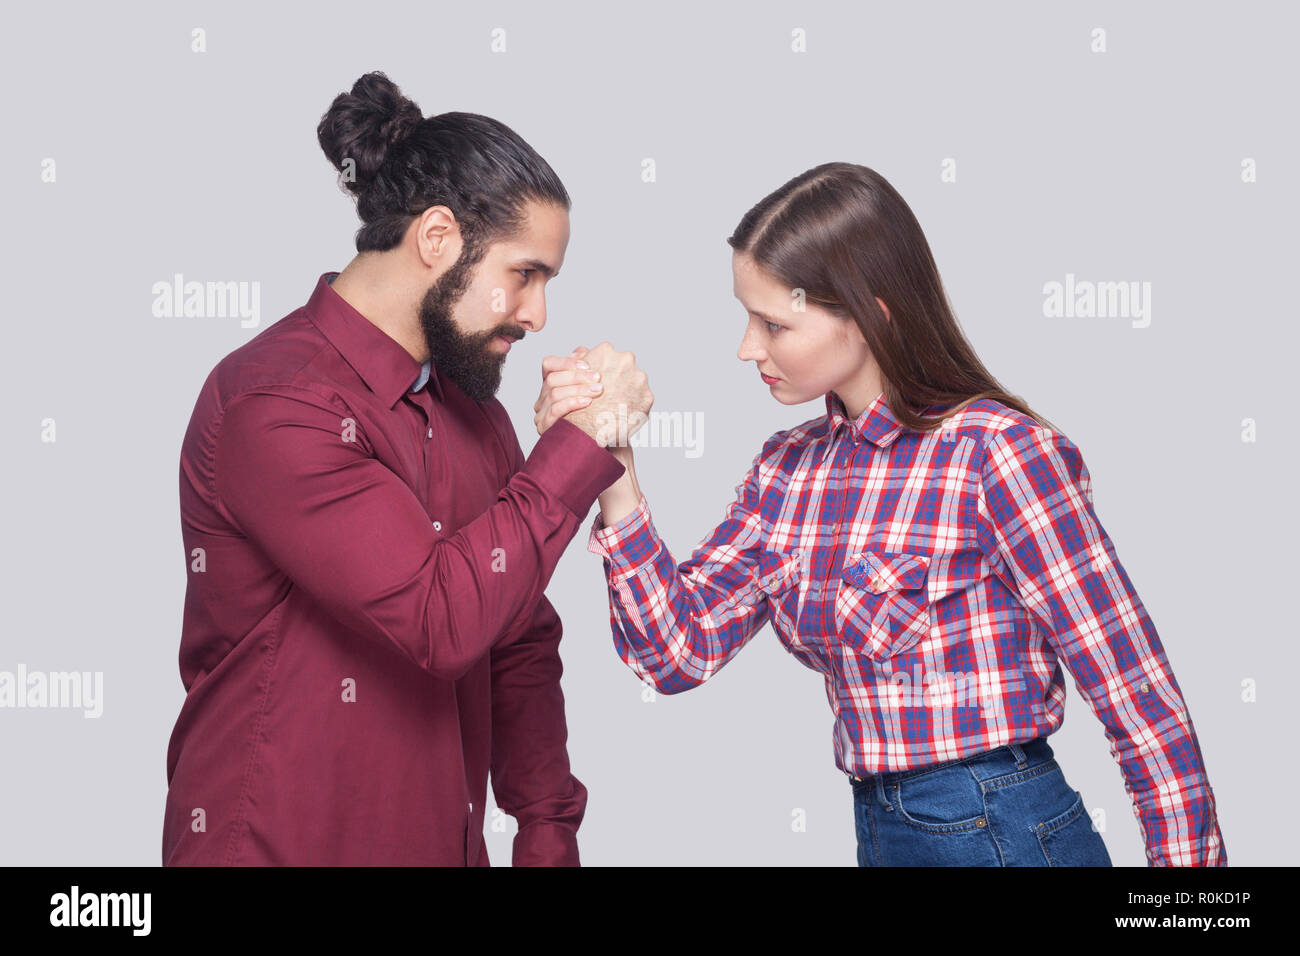 Vue côté profil portrait de l'homme et la femme à barbe style casual debout dans armwrestling poser et se regardant avec sérieux. Banque D'Images